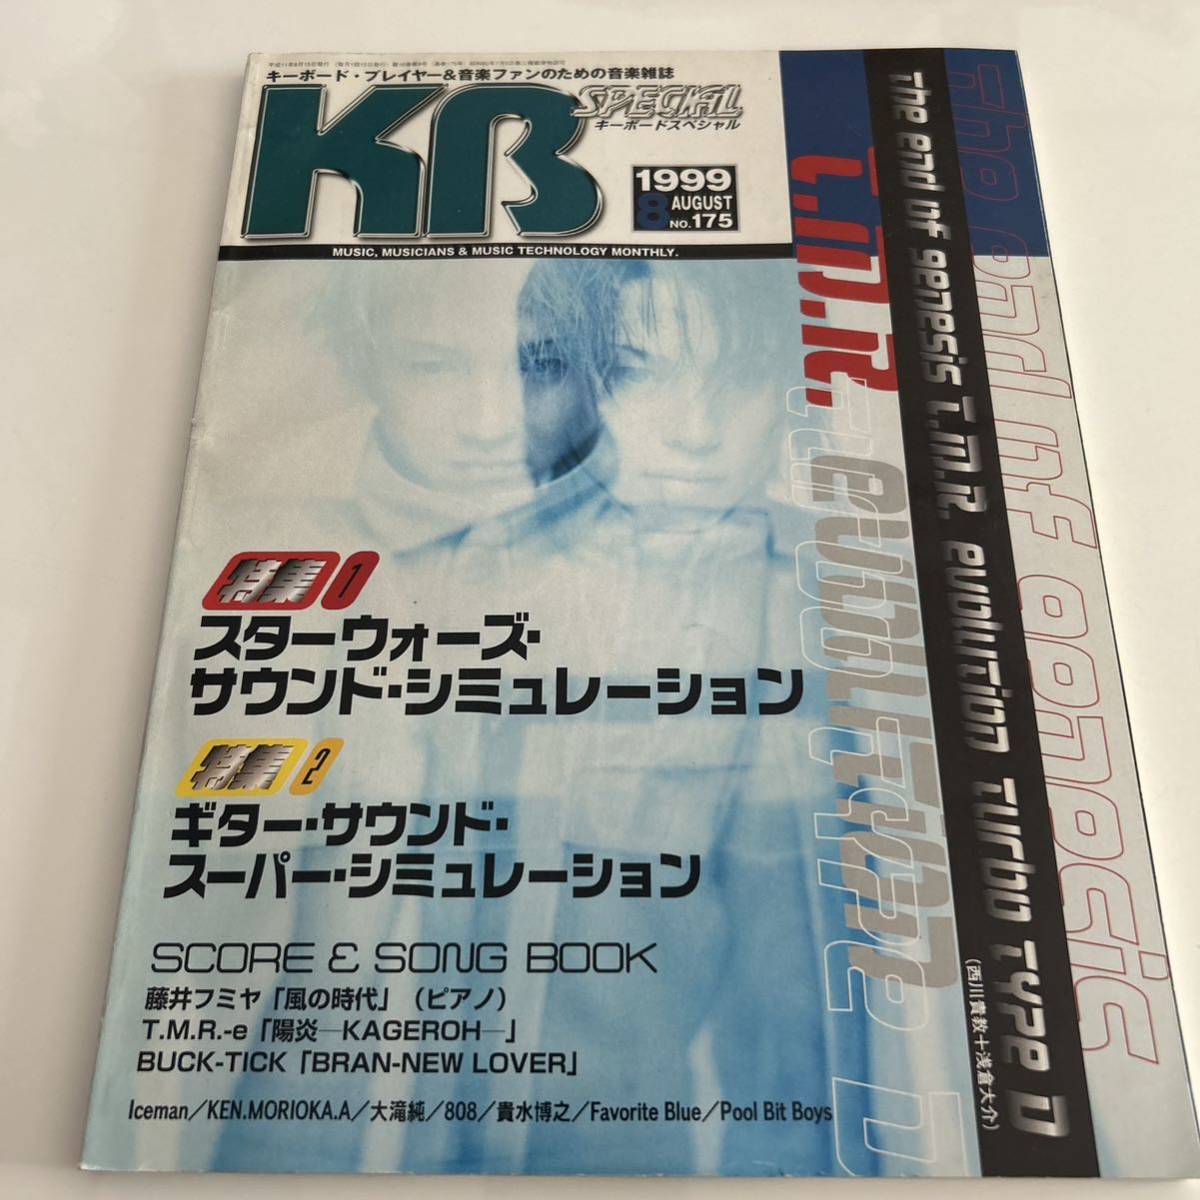 キーボードスペシャル 1999年8月号 keyboad Special 浅倉大介 TM Revolution Iceman DTM シンセ ヤマハ コルグ ローランドの画像1